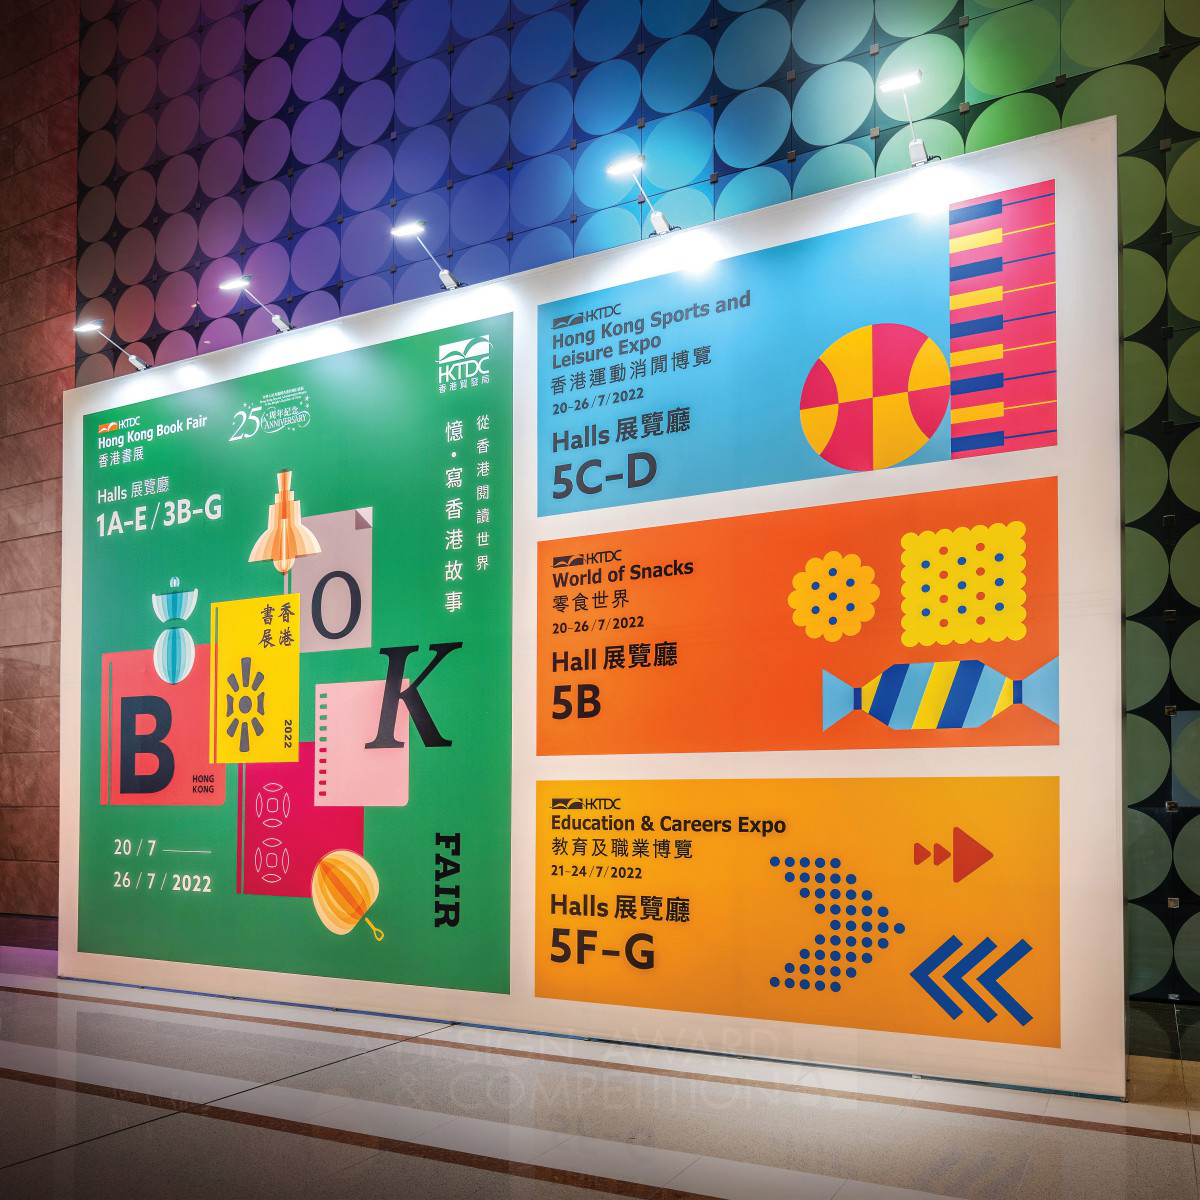 Hong Kong Book Fair 2022 Public Exhibition